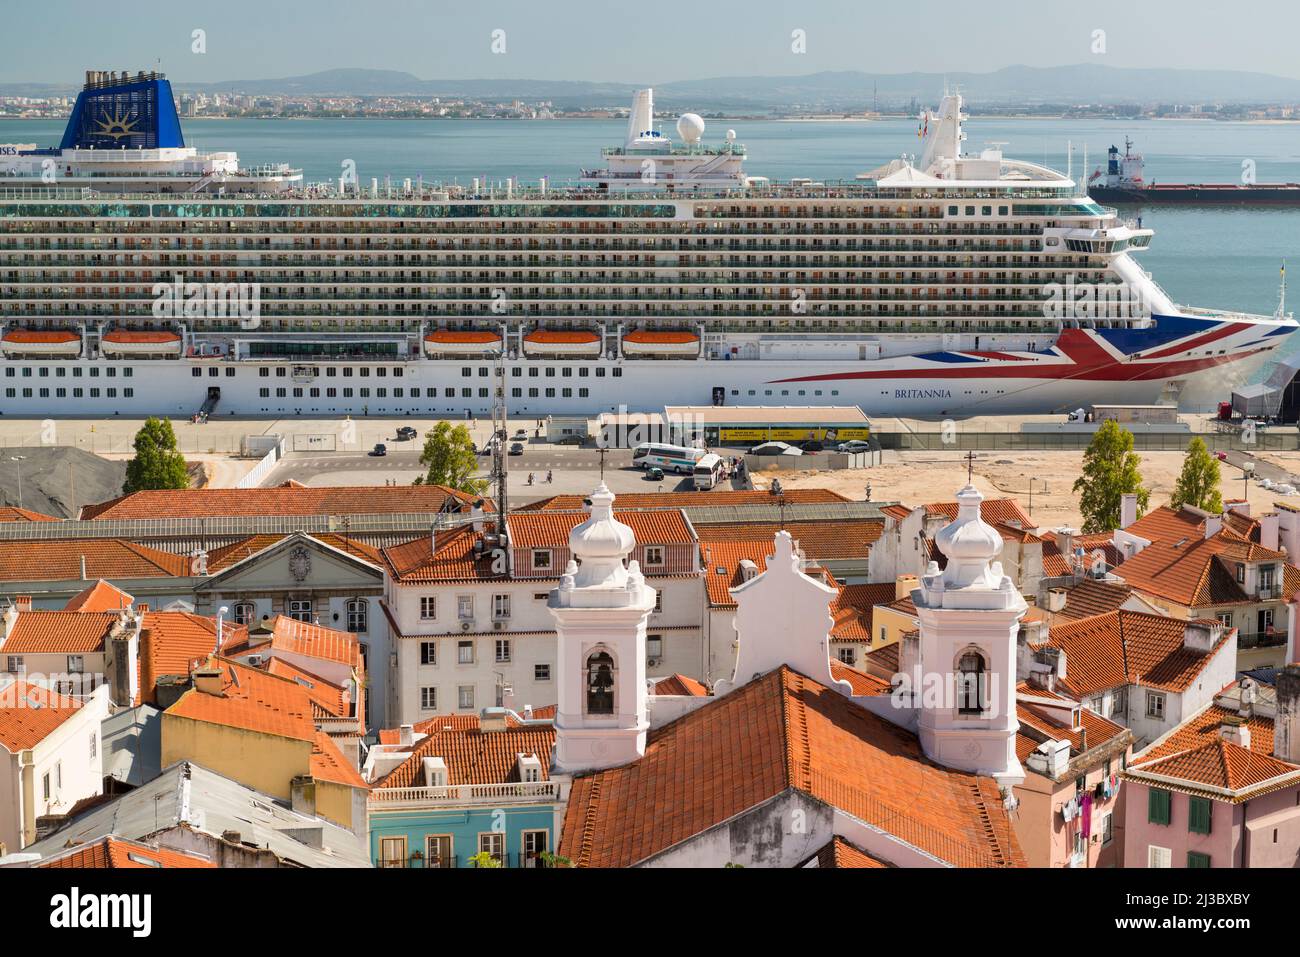 Blick vom Miradouro Santa Luzia auf die roten Dächer der Altstadt, die Kirche von São Miguel und das festgedeckte Schiff P&O britannia. Lissabon, Portugal Stockfoto